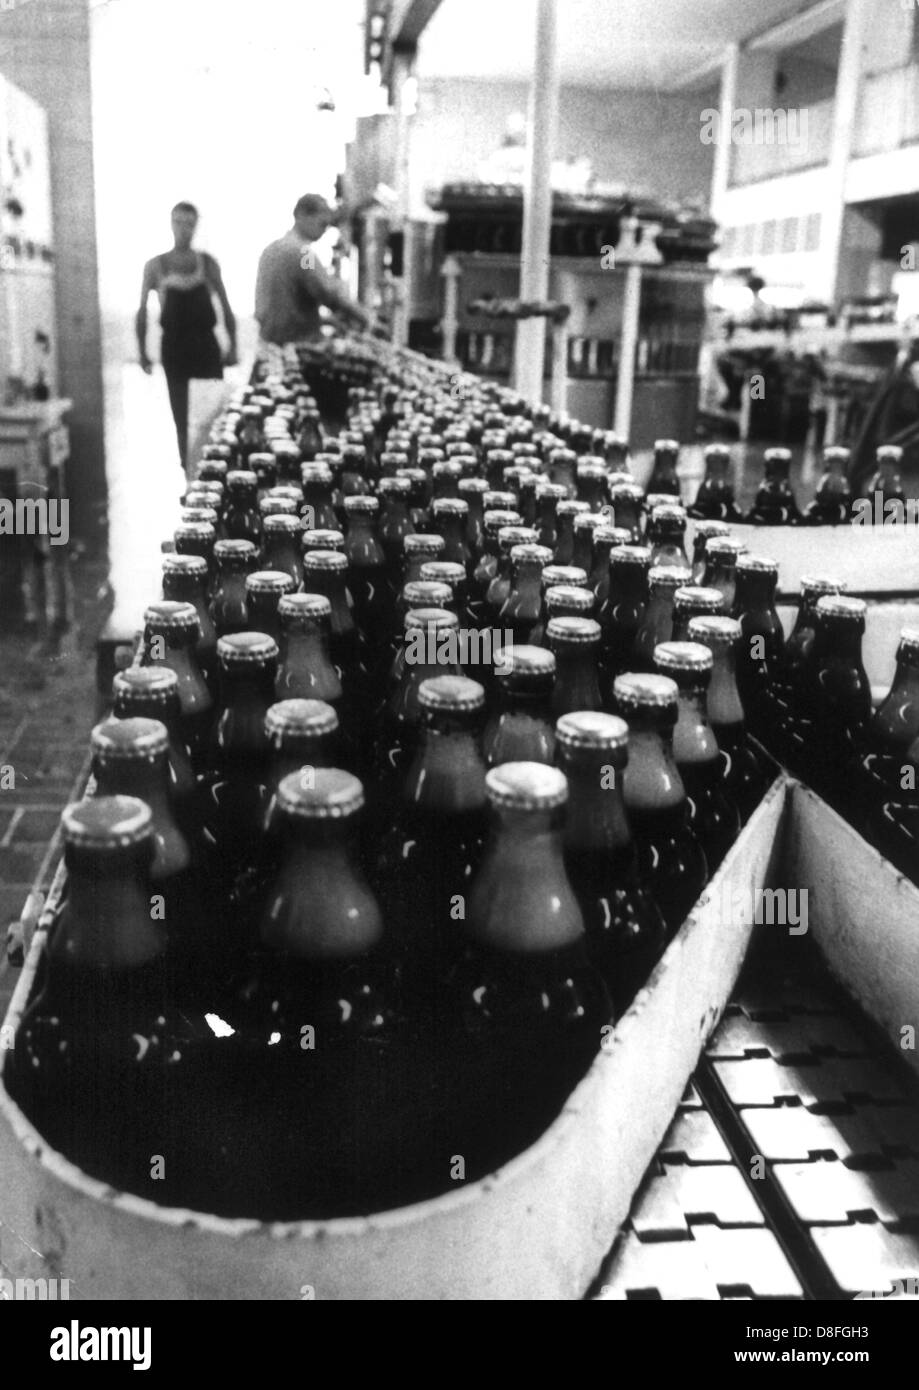 Die Produktion läuft auf Hochtouren in der Brauerei Berlin 1969. Stockfoto